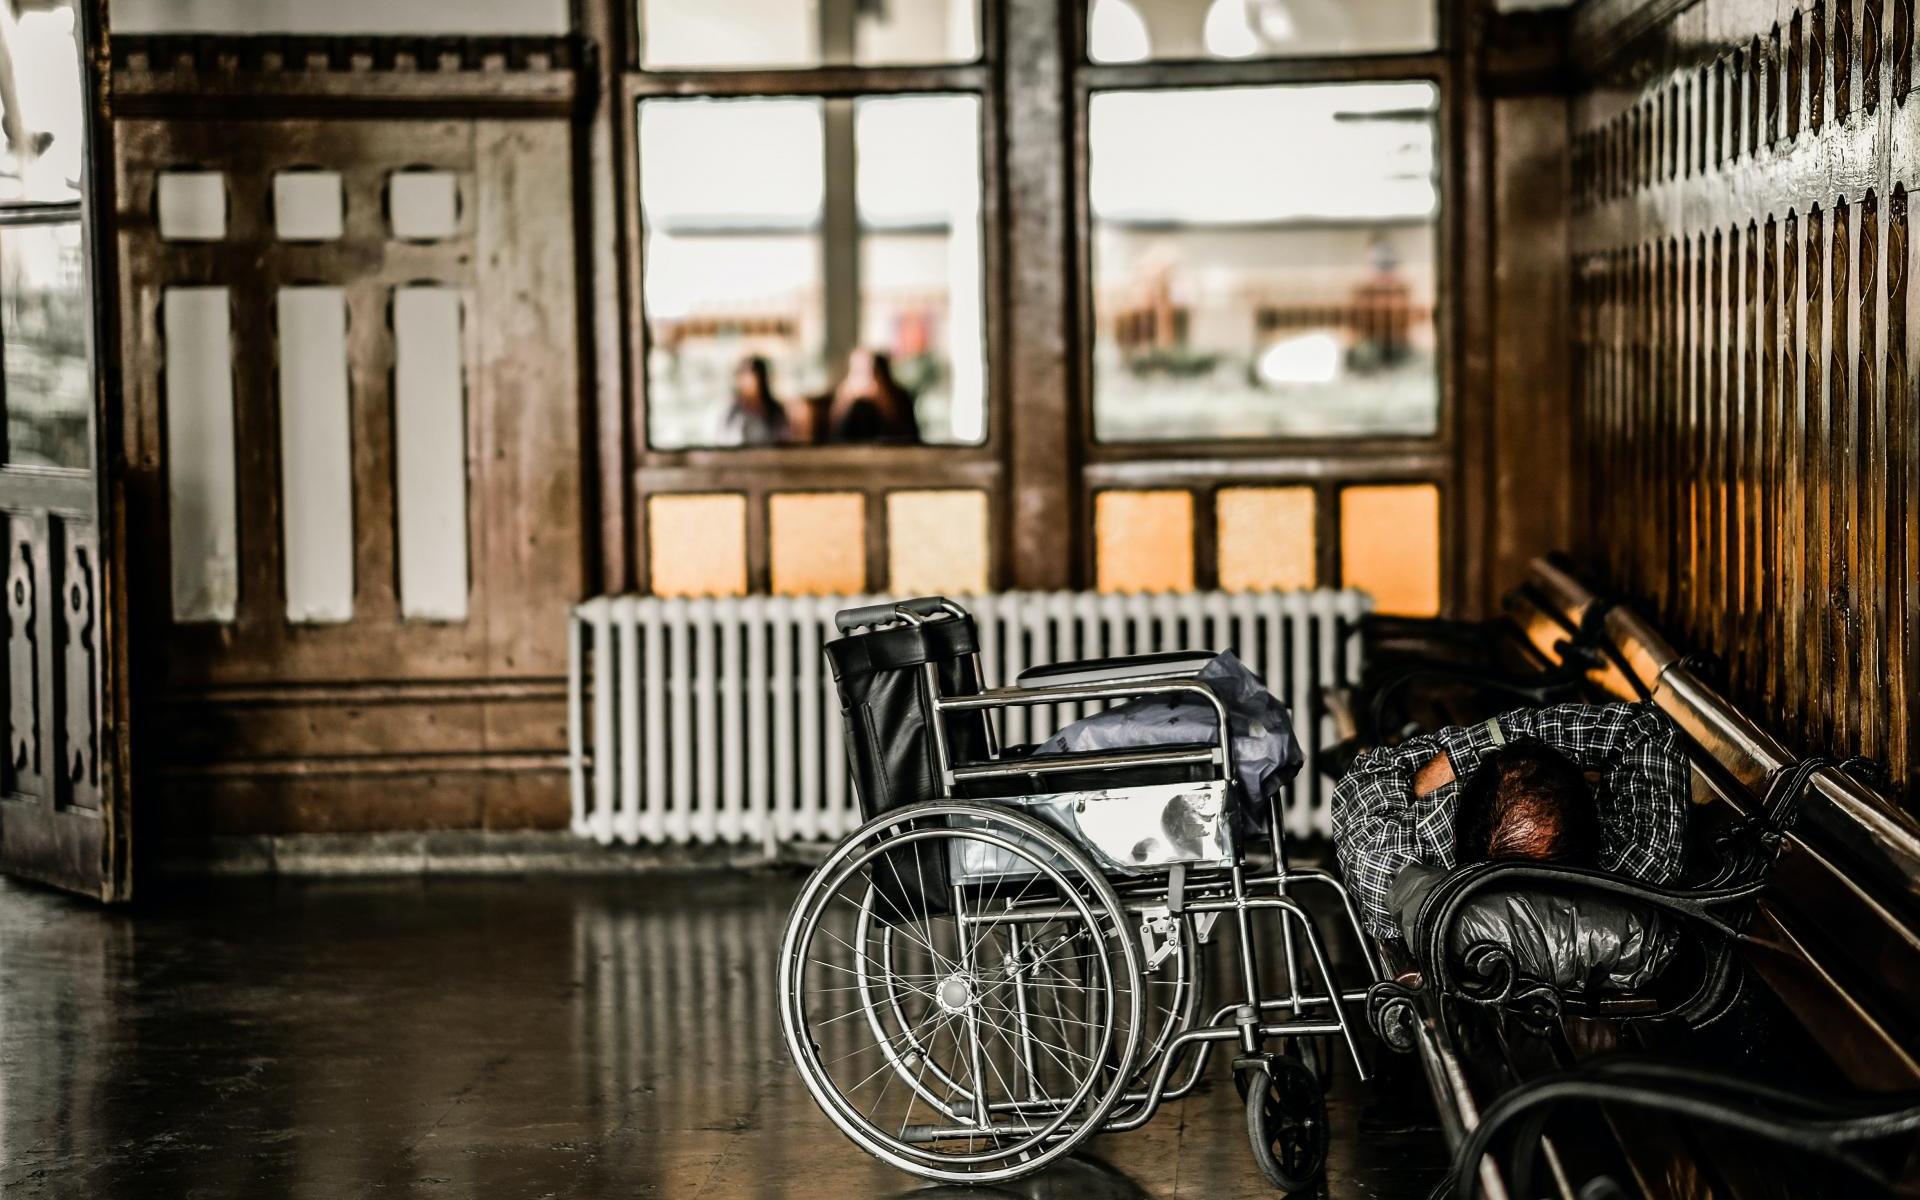 Rollstuhlfahrer liegt gemütlich auf einer Bank zu Hause